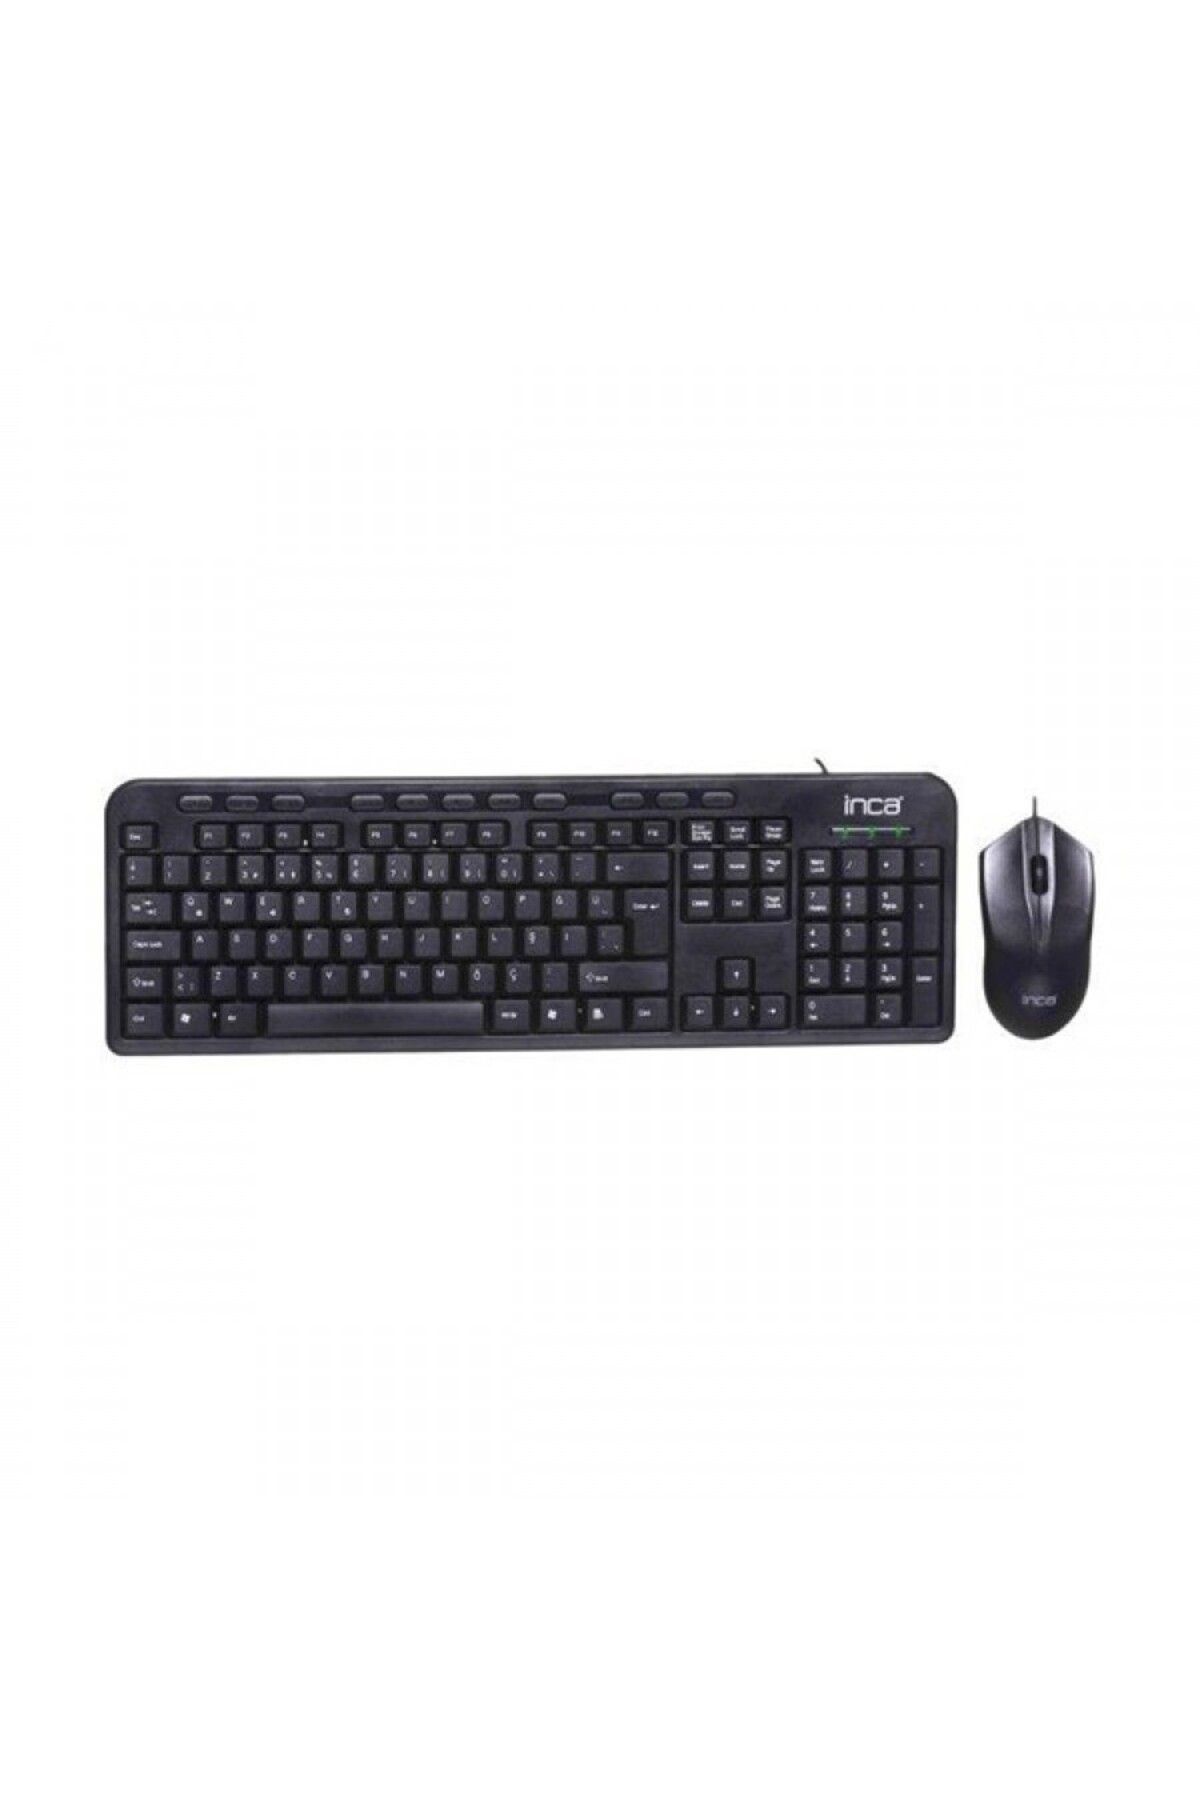 Inca IMK-375T Q Türkçe USB Multimedya Siyah Klavye+ Mouse